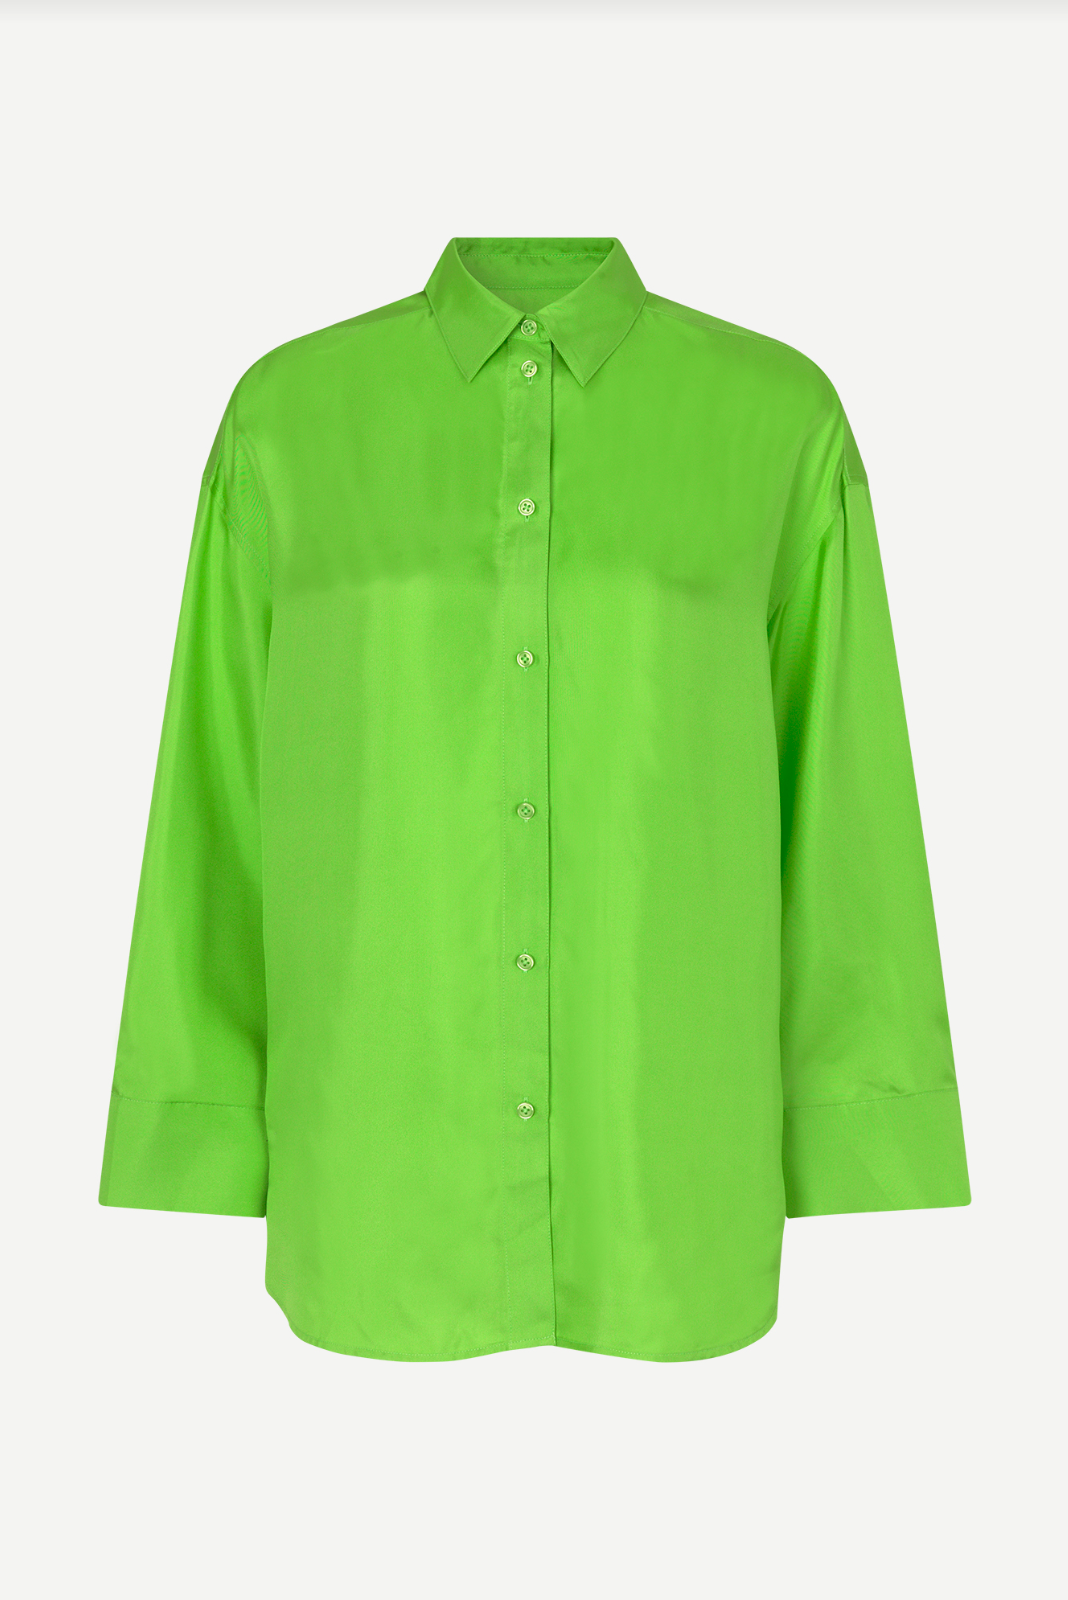 Marika Shirt in Green Flash